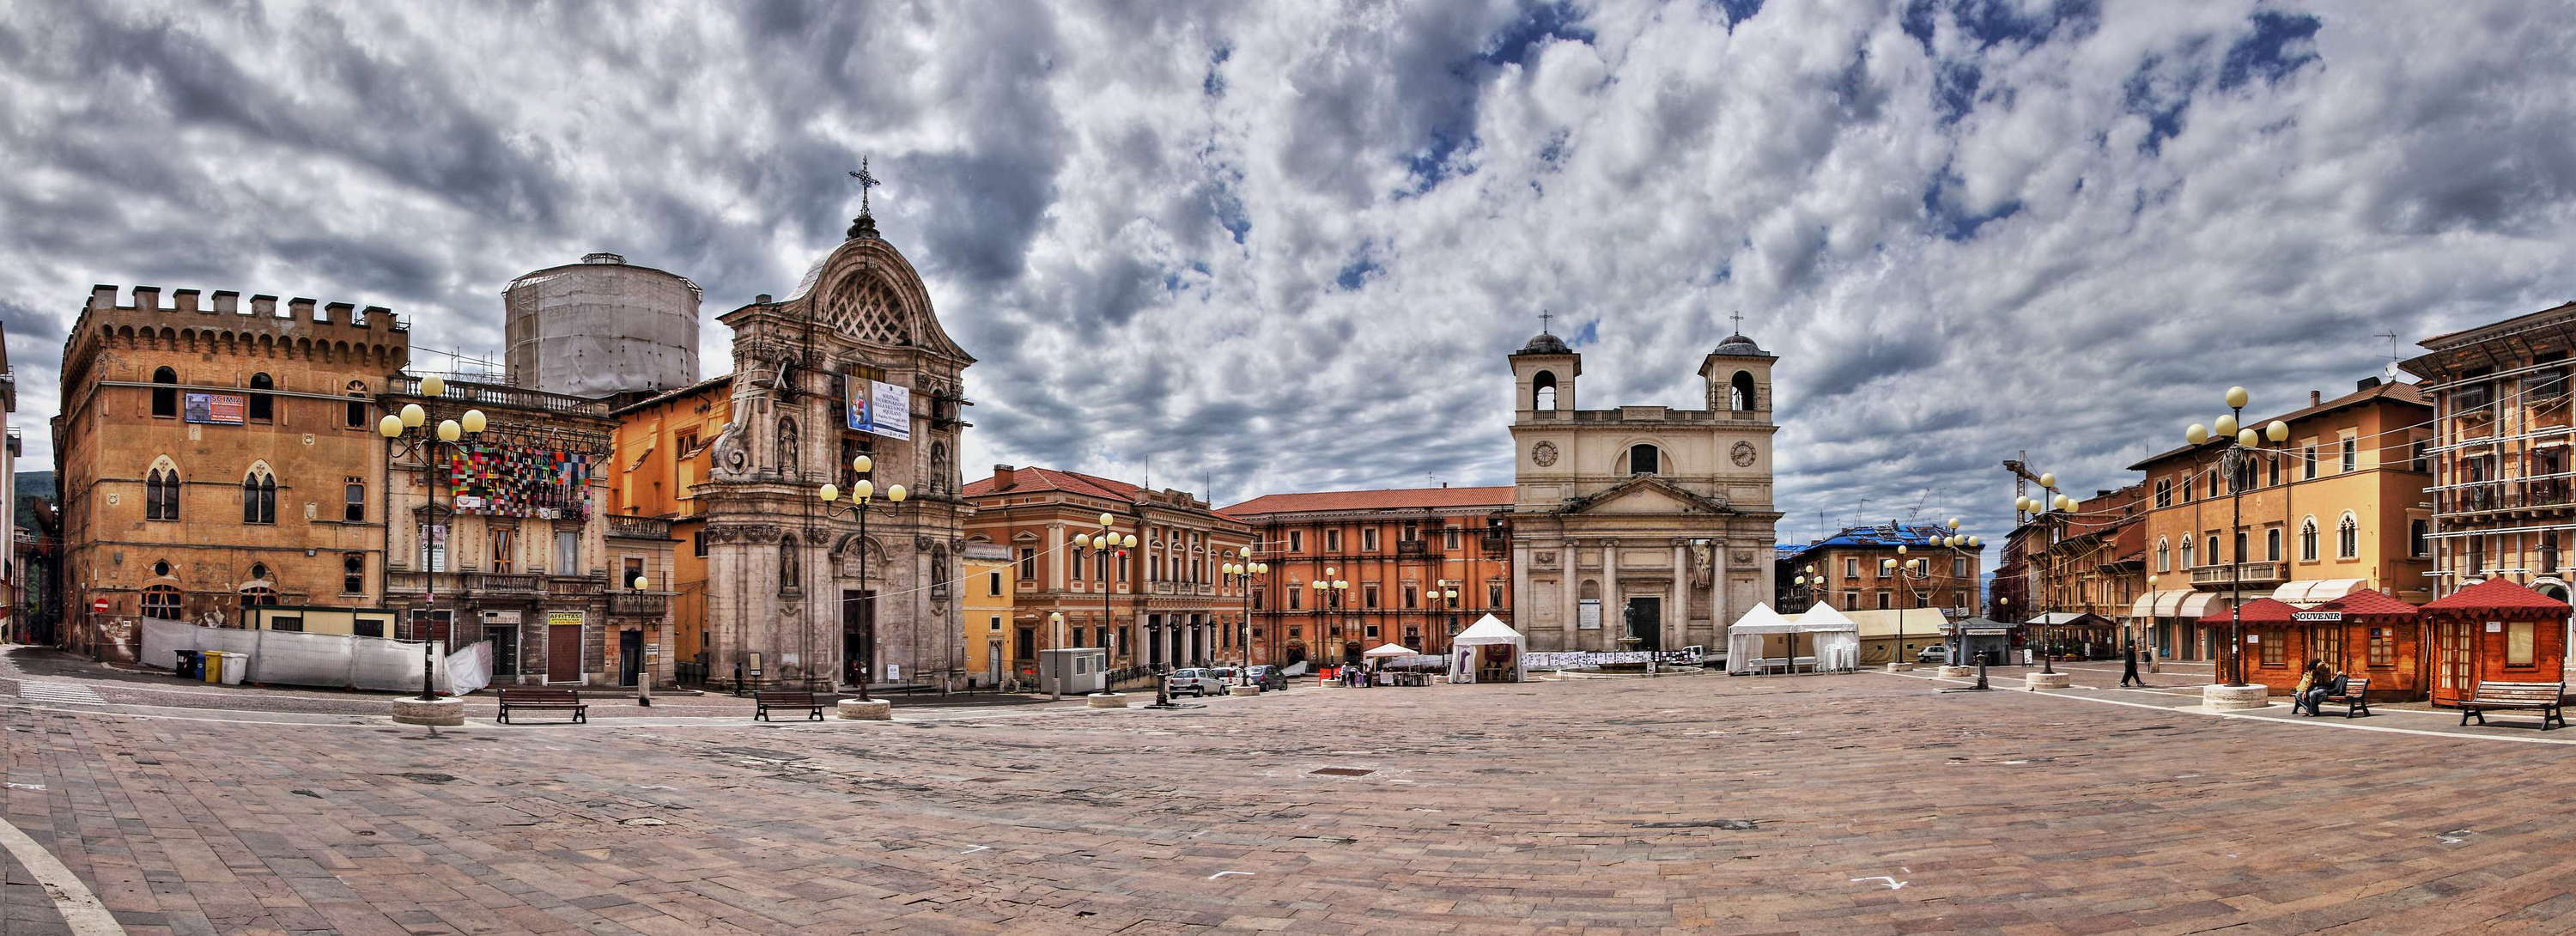 L'Aquila | Piazza del Duomo